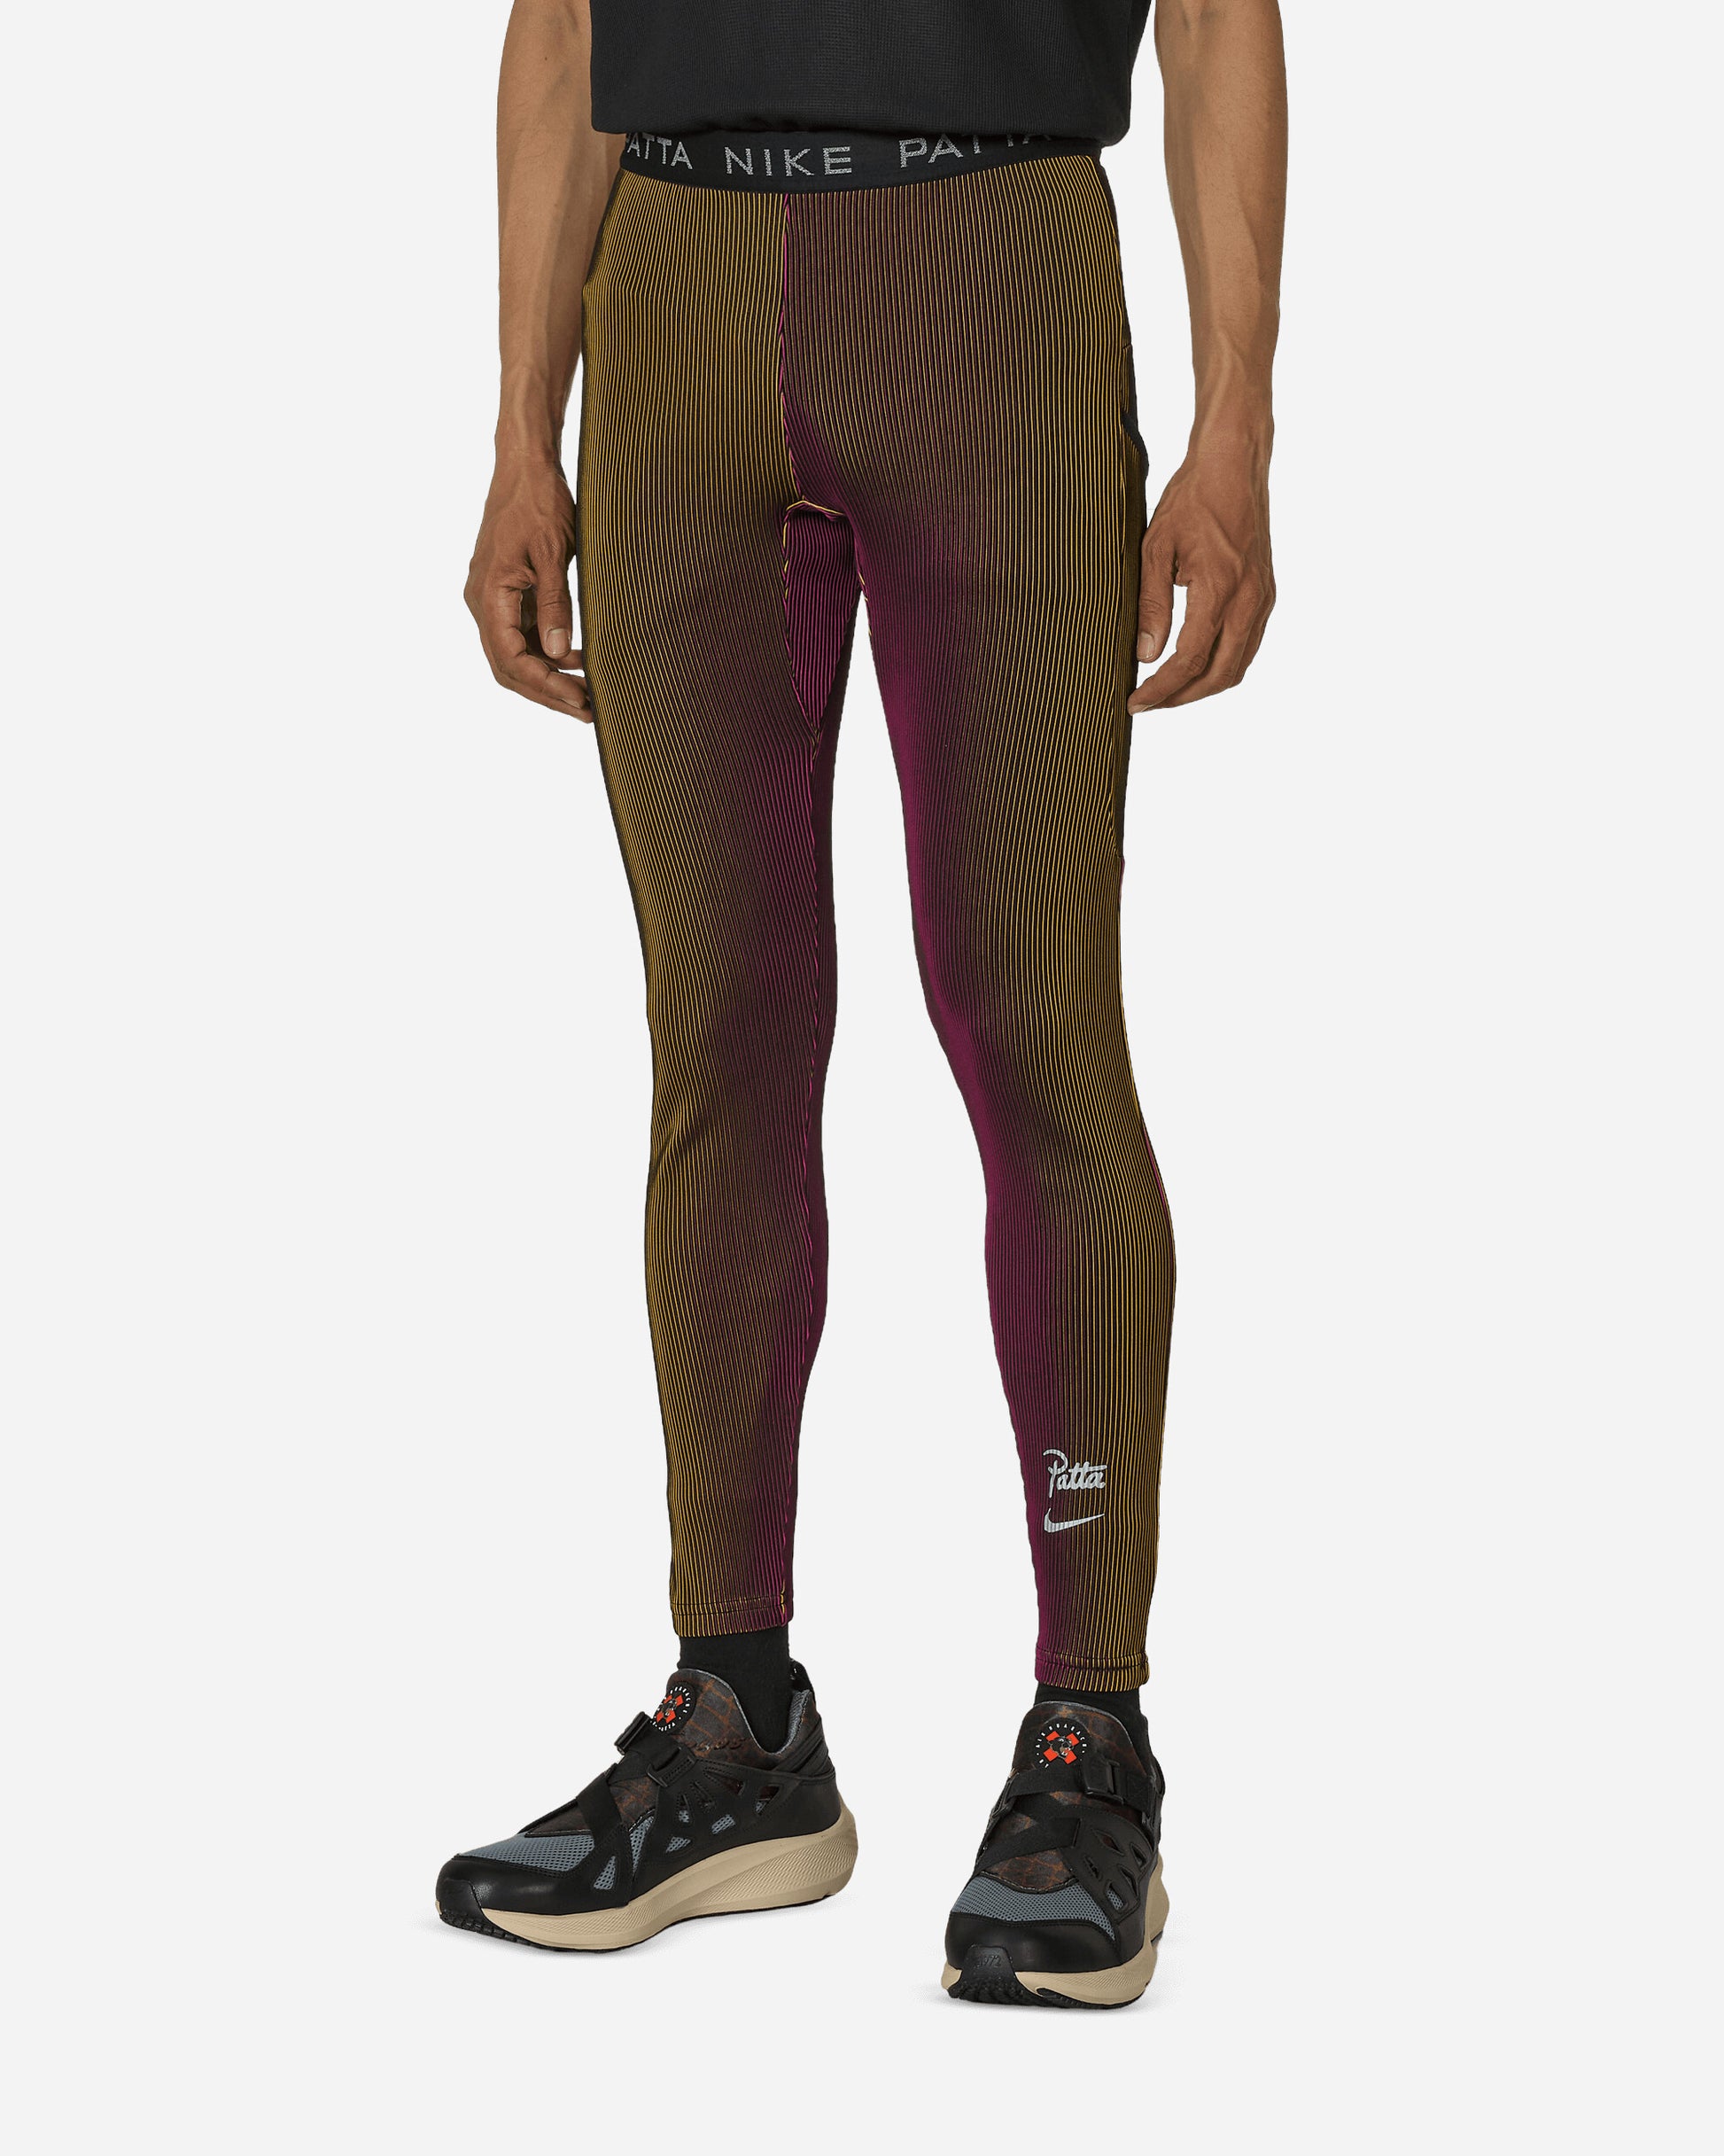 Nike M Nrg Patta Legging Fireberry Pants Sweatpants FJ3061-615